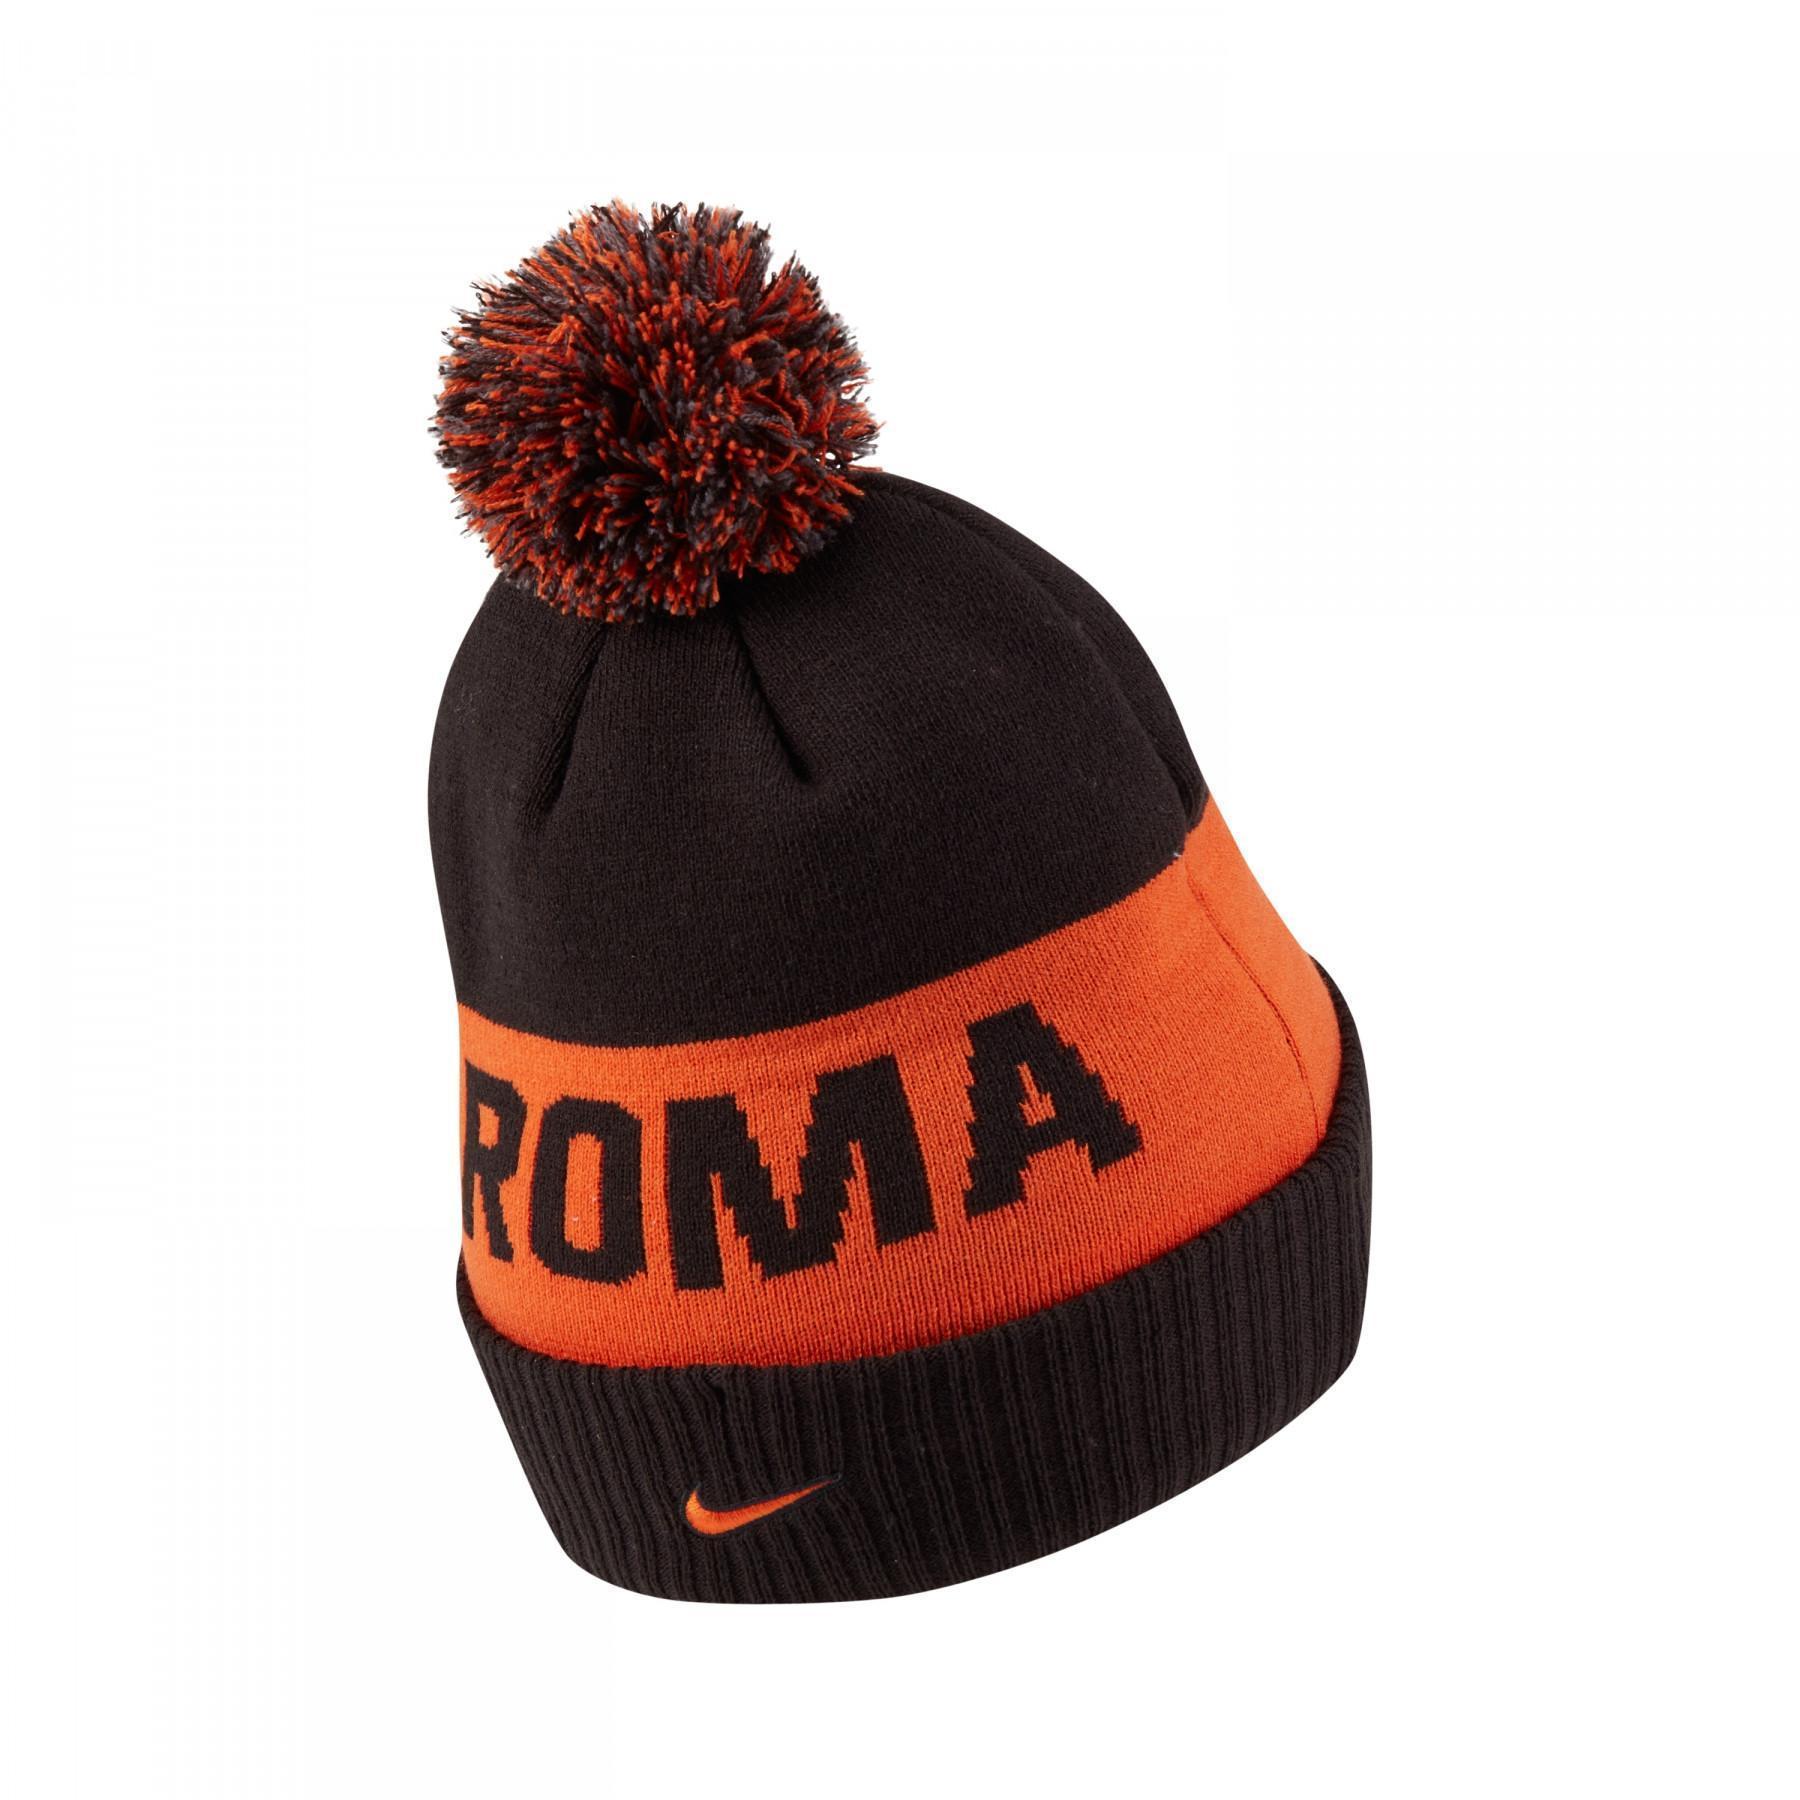 Mütze mit Bommel AS Roma 2020/21